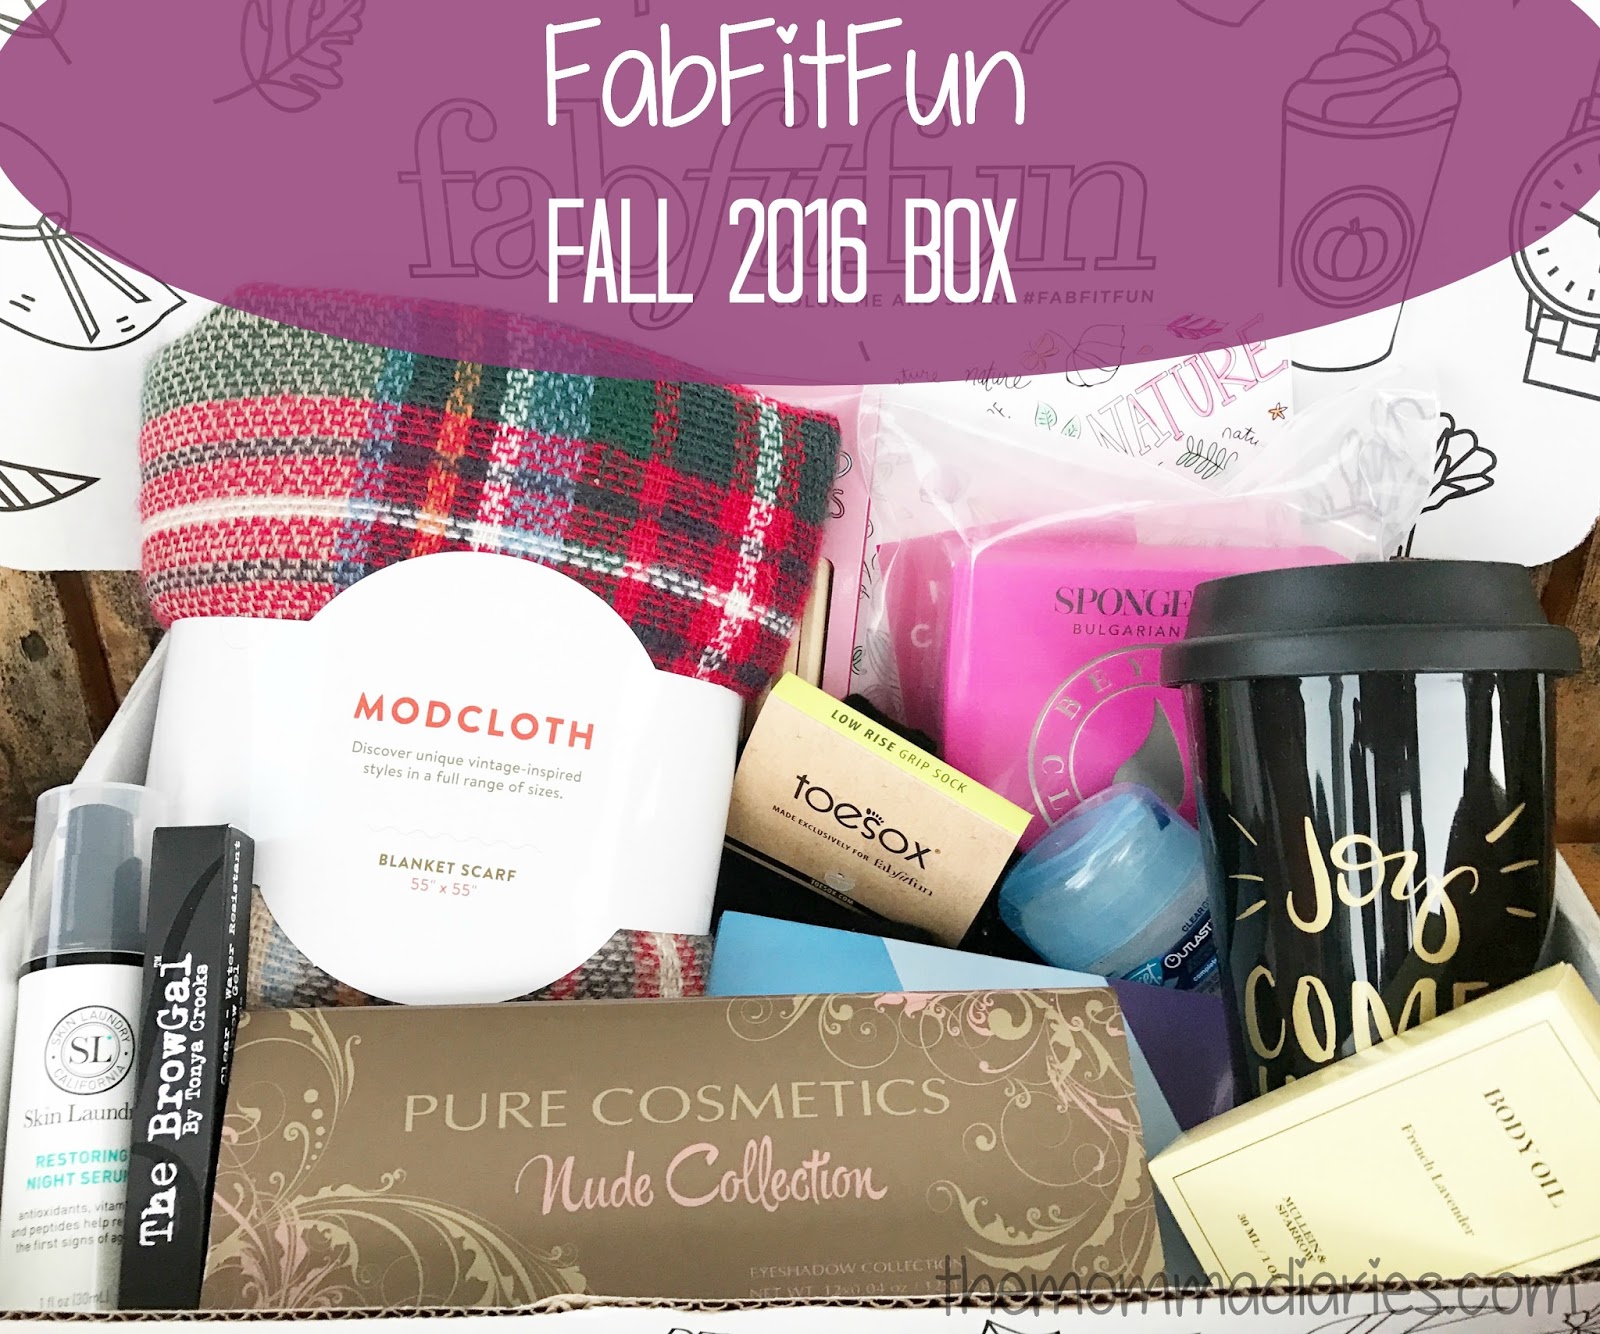 FabFitFun Fall 2016 Box Review & Promo Code! The Momma Diaries